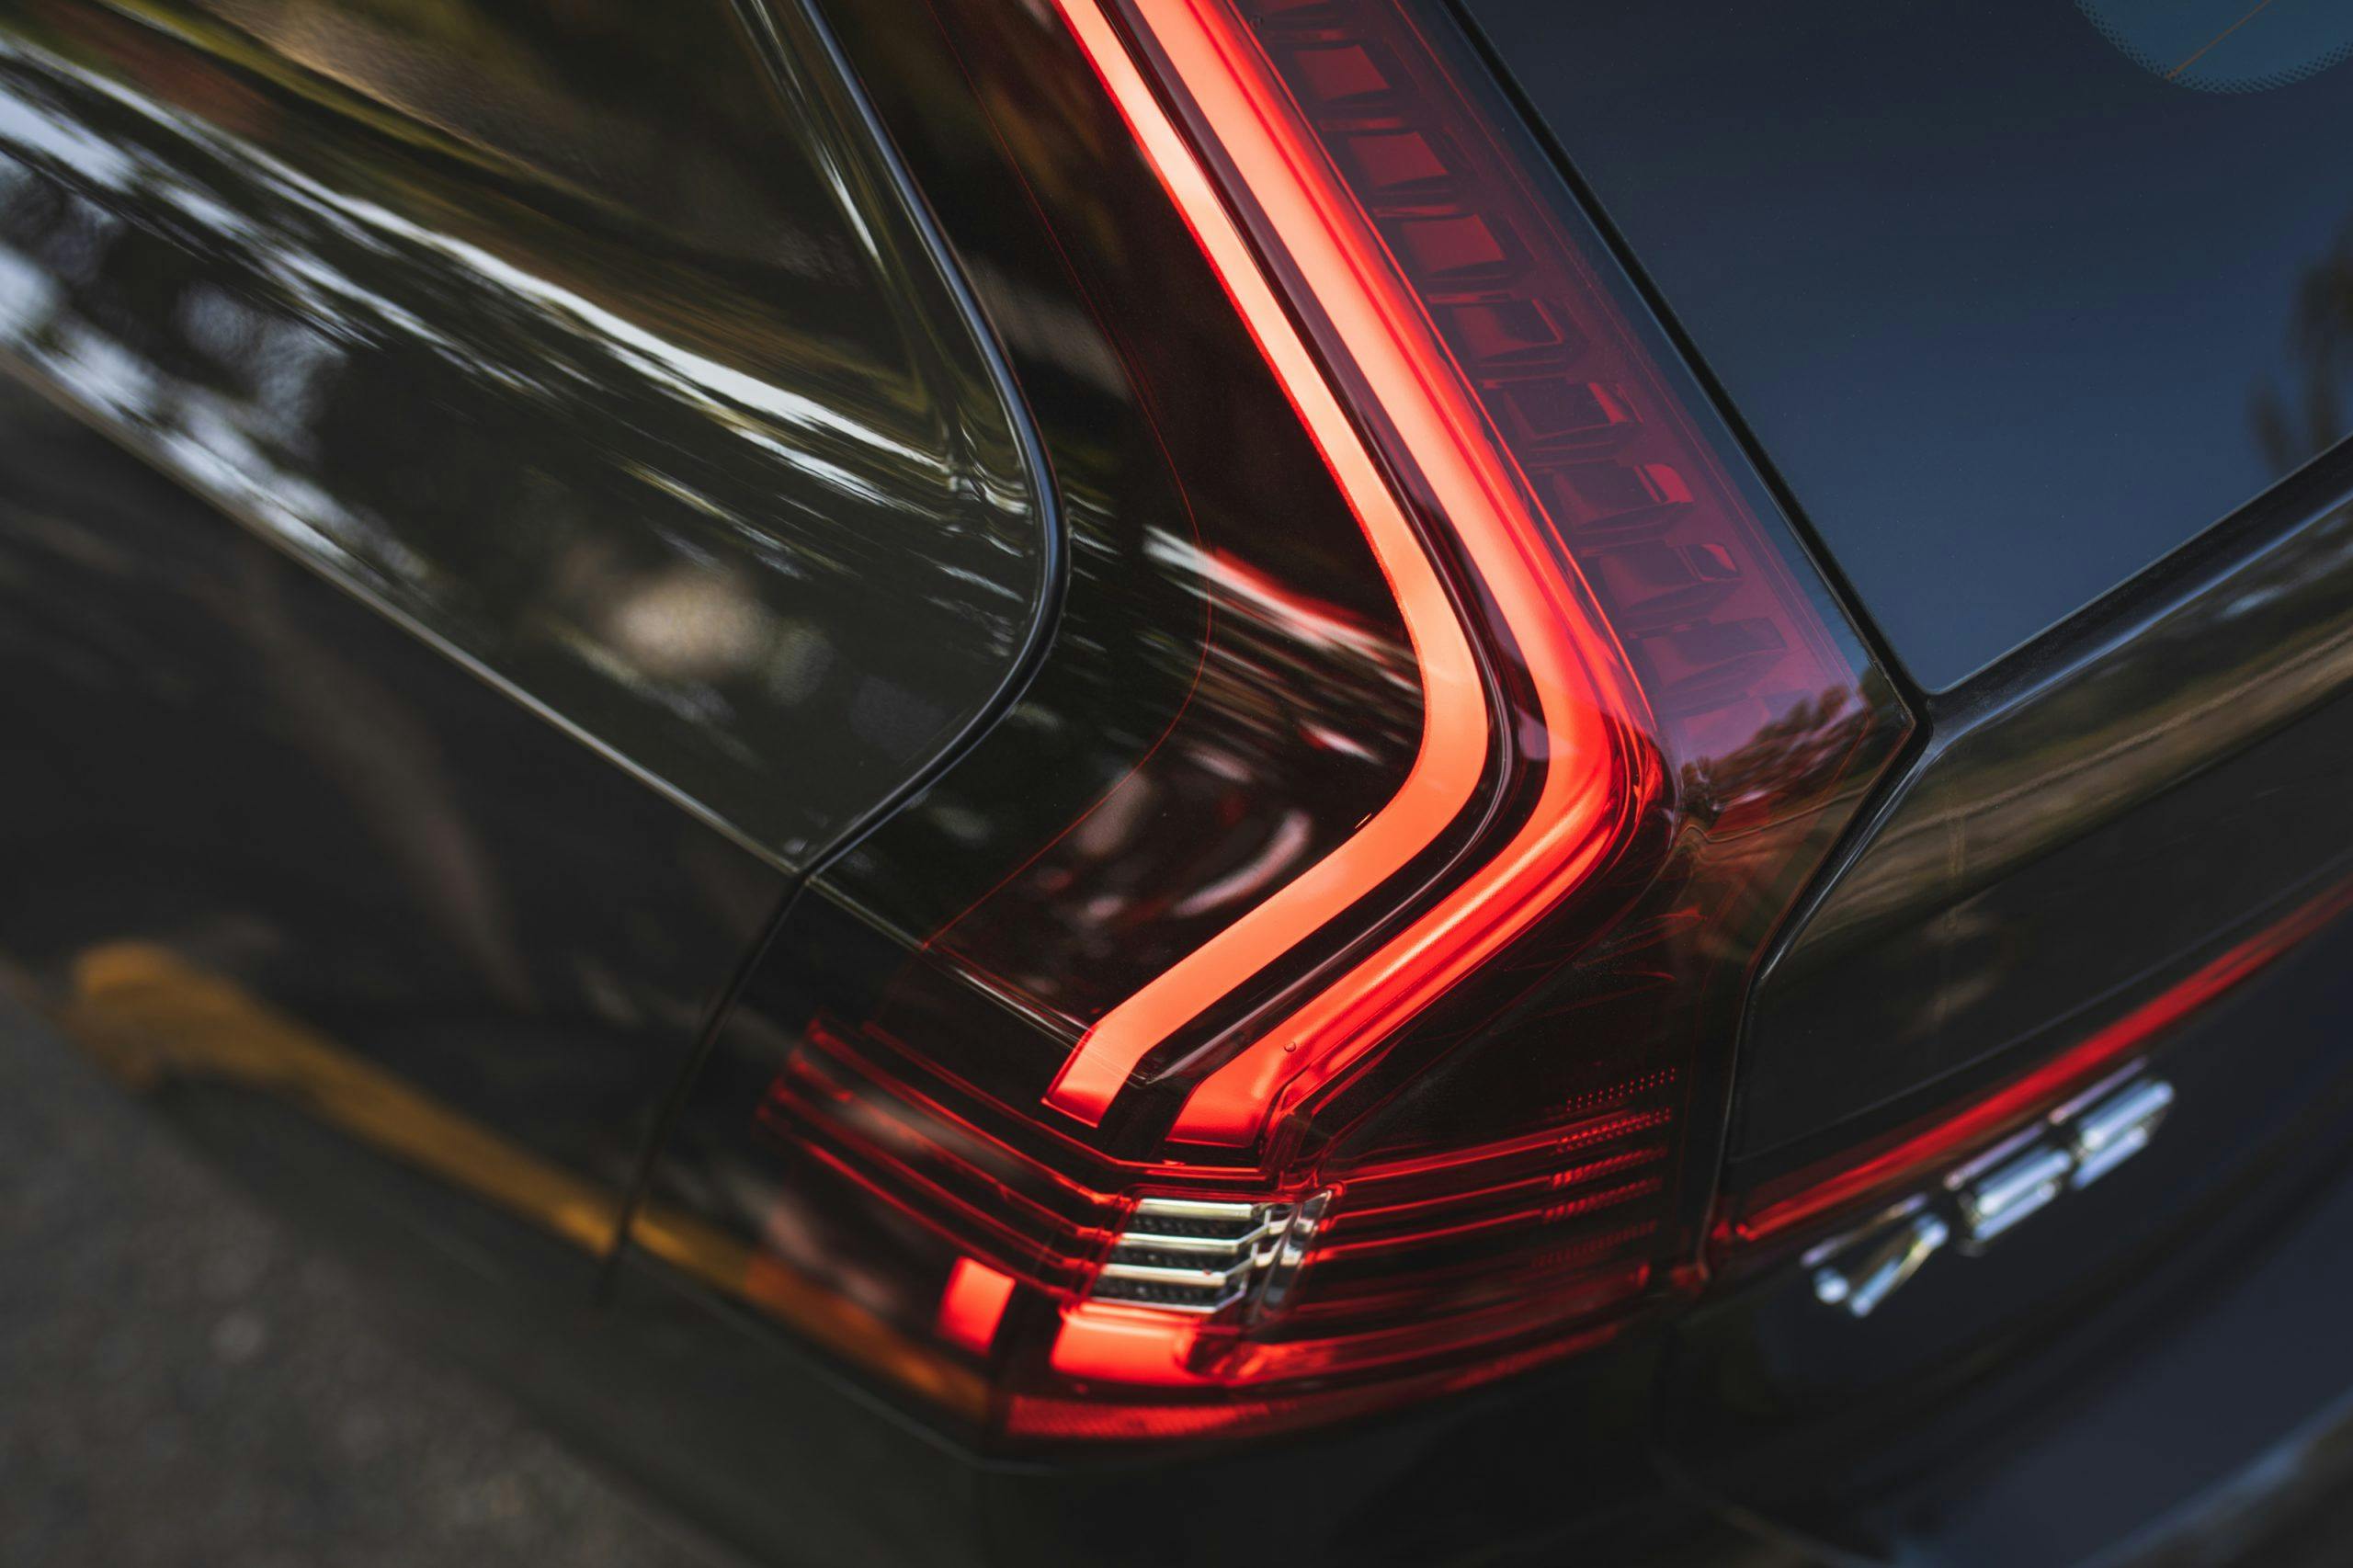 Volvo V90 taillight close up